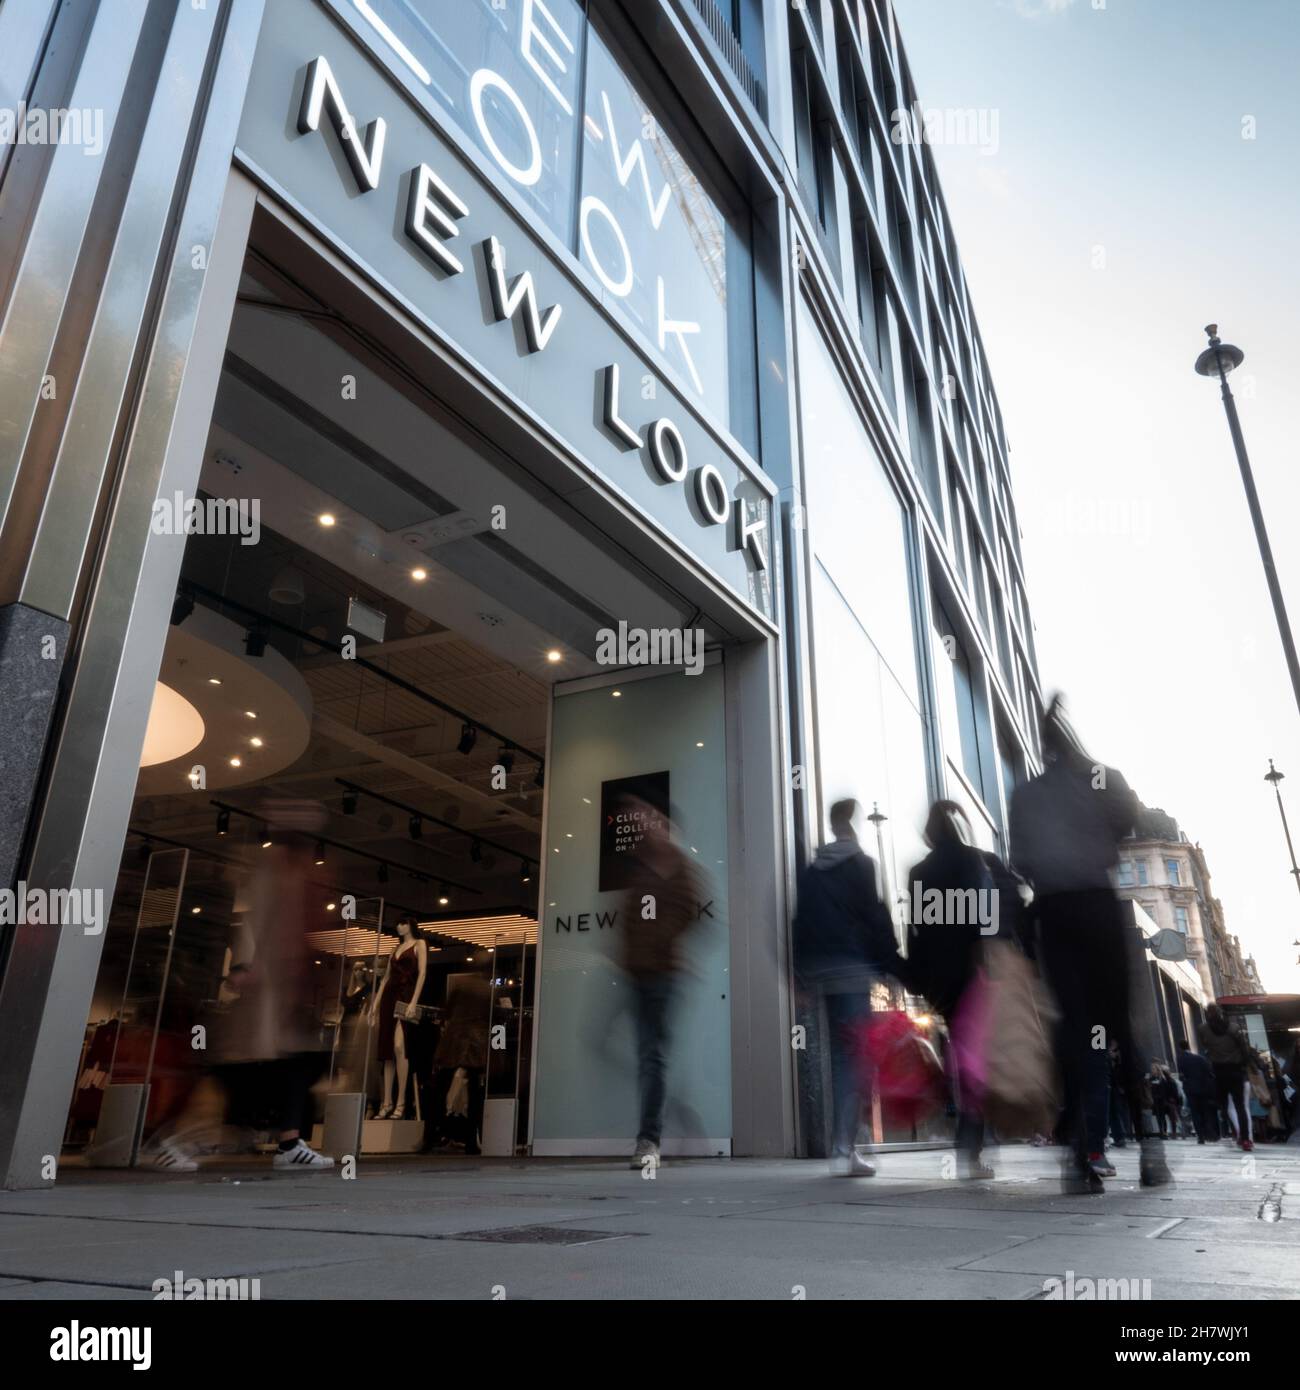 Nouveau magasin de mode, Oxford Street, Londres.Les amateurs de shopping passent devant l'entrée du magasin de mode High Street dans le quartier commerçant animé de Londres. Banque D'Images